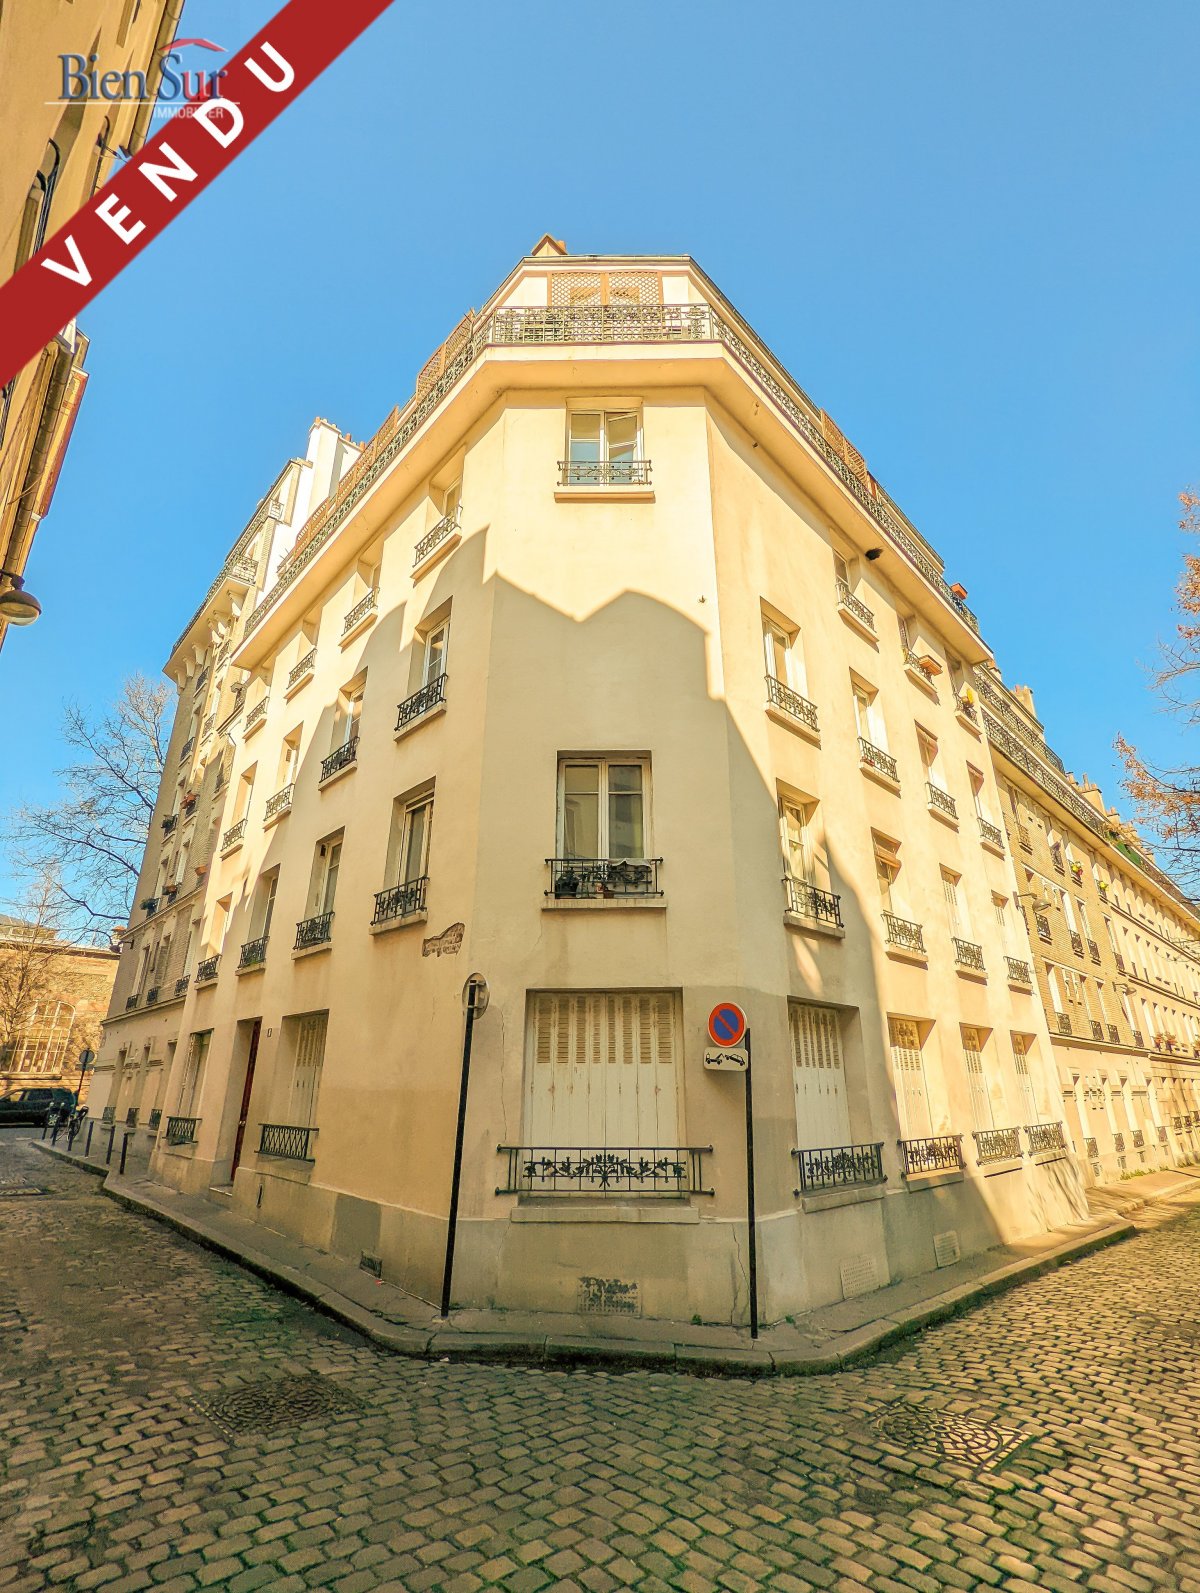 Vente Appartement  2 pièces - 23.24m² 75013 Paris